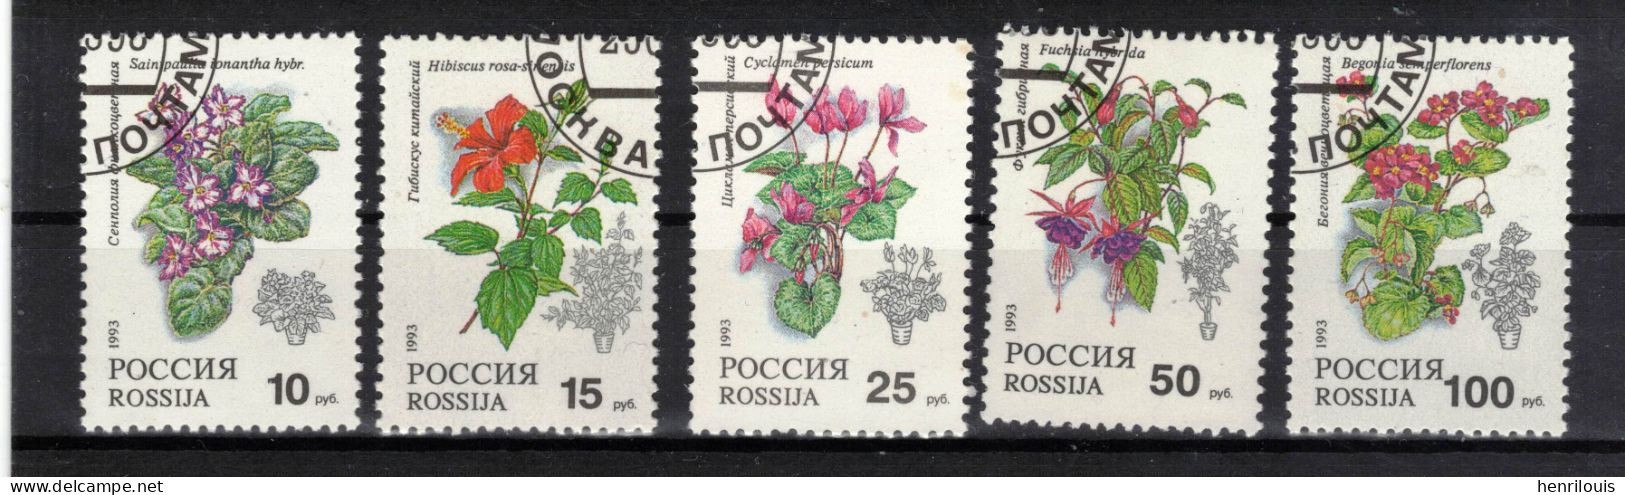 Russie   Timbres  De 1993  ( Ref 1332 H)  Flore - Fleurs - Oblitérés